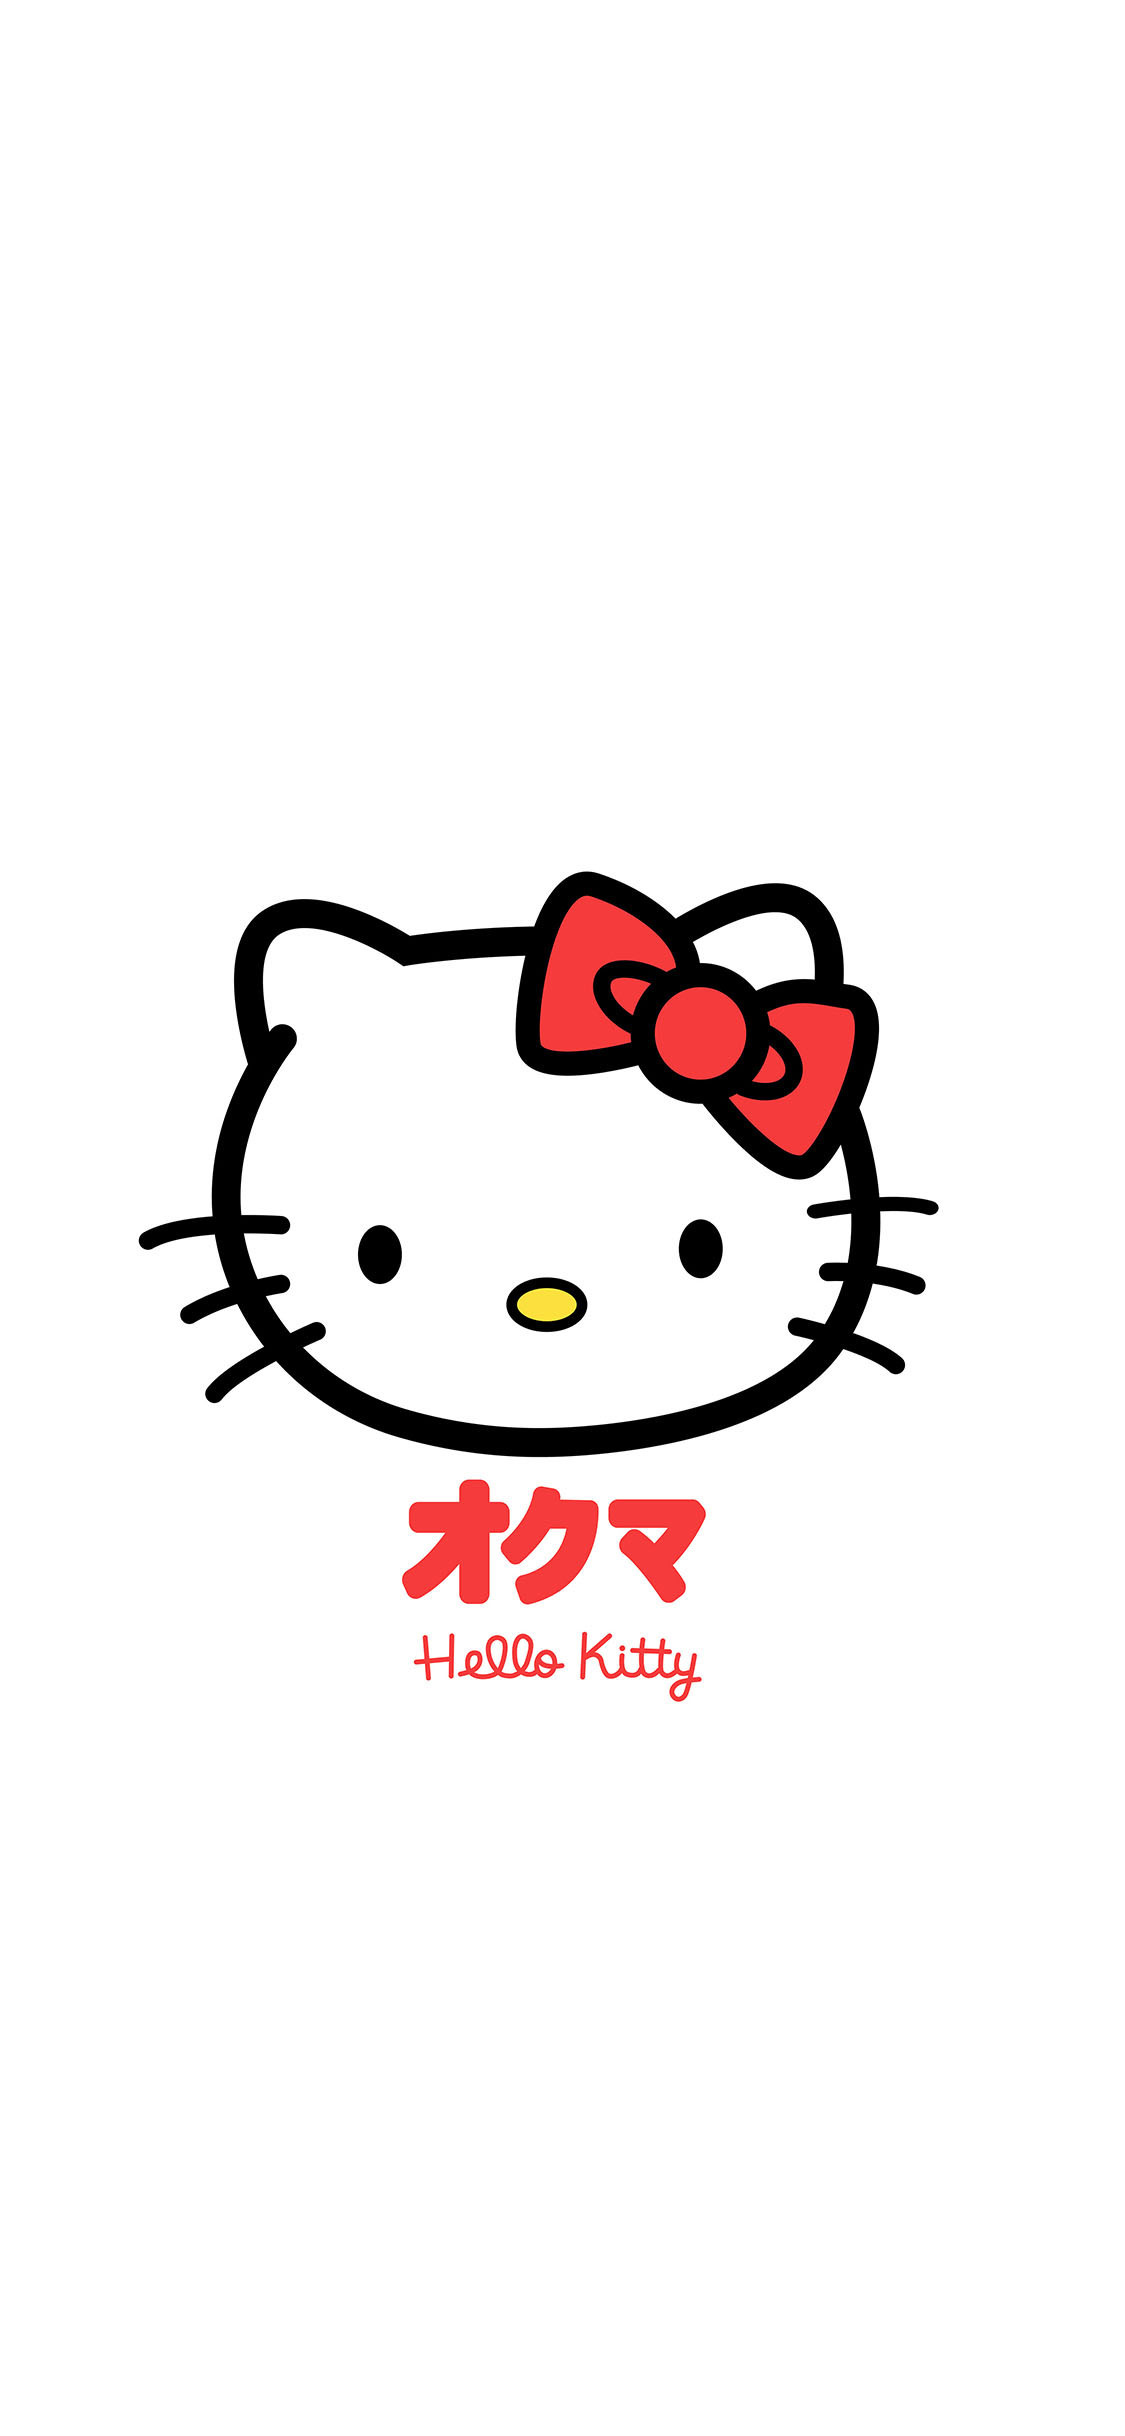 Hello Kitty 手機壁紙套圖 茉墨 Mdeditor